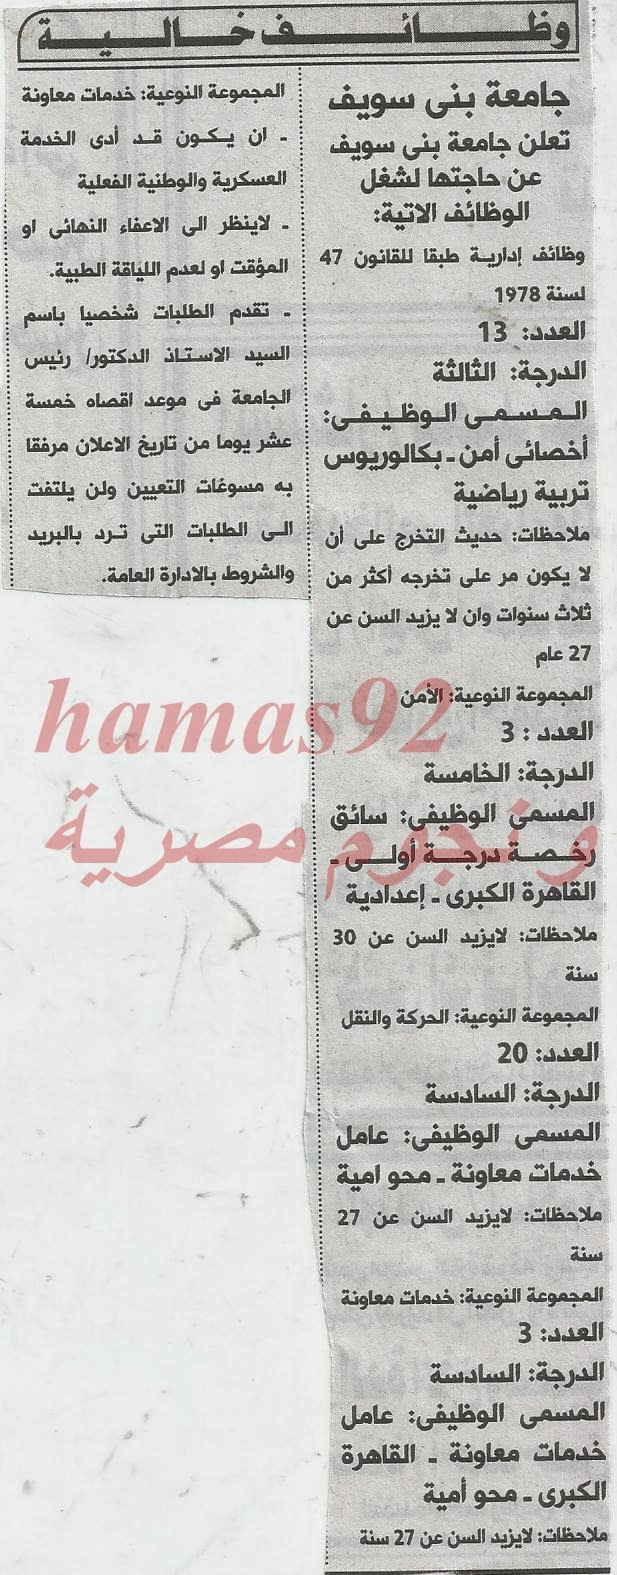 وظائف الشركات و الجامعات بجريدة الاهرام الجمعة 20-12-2013 22